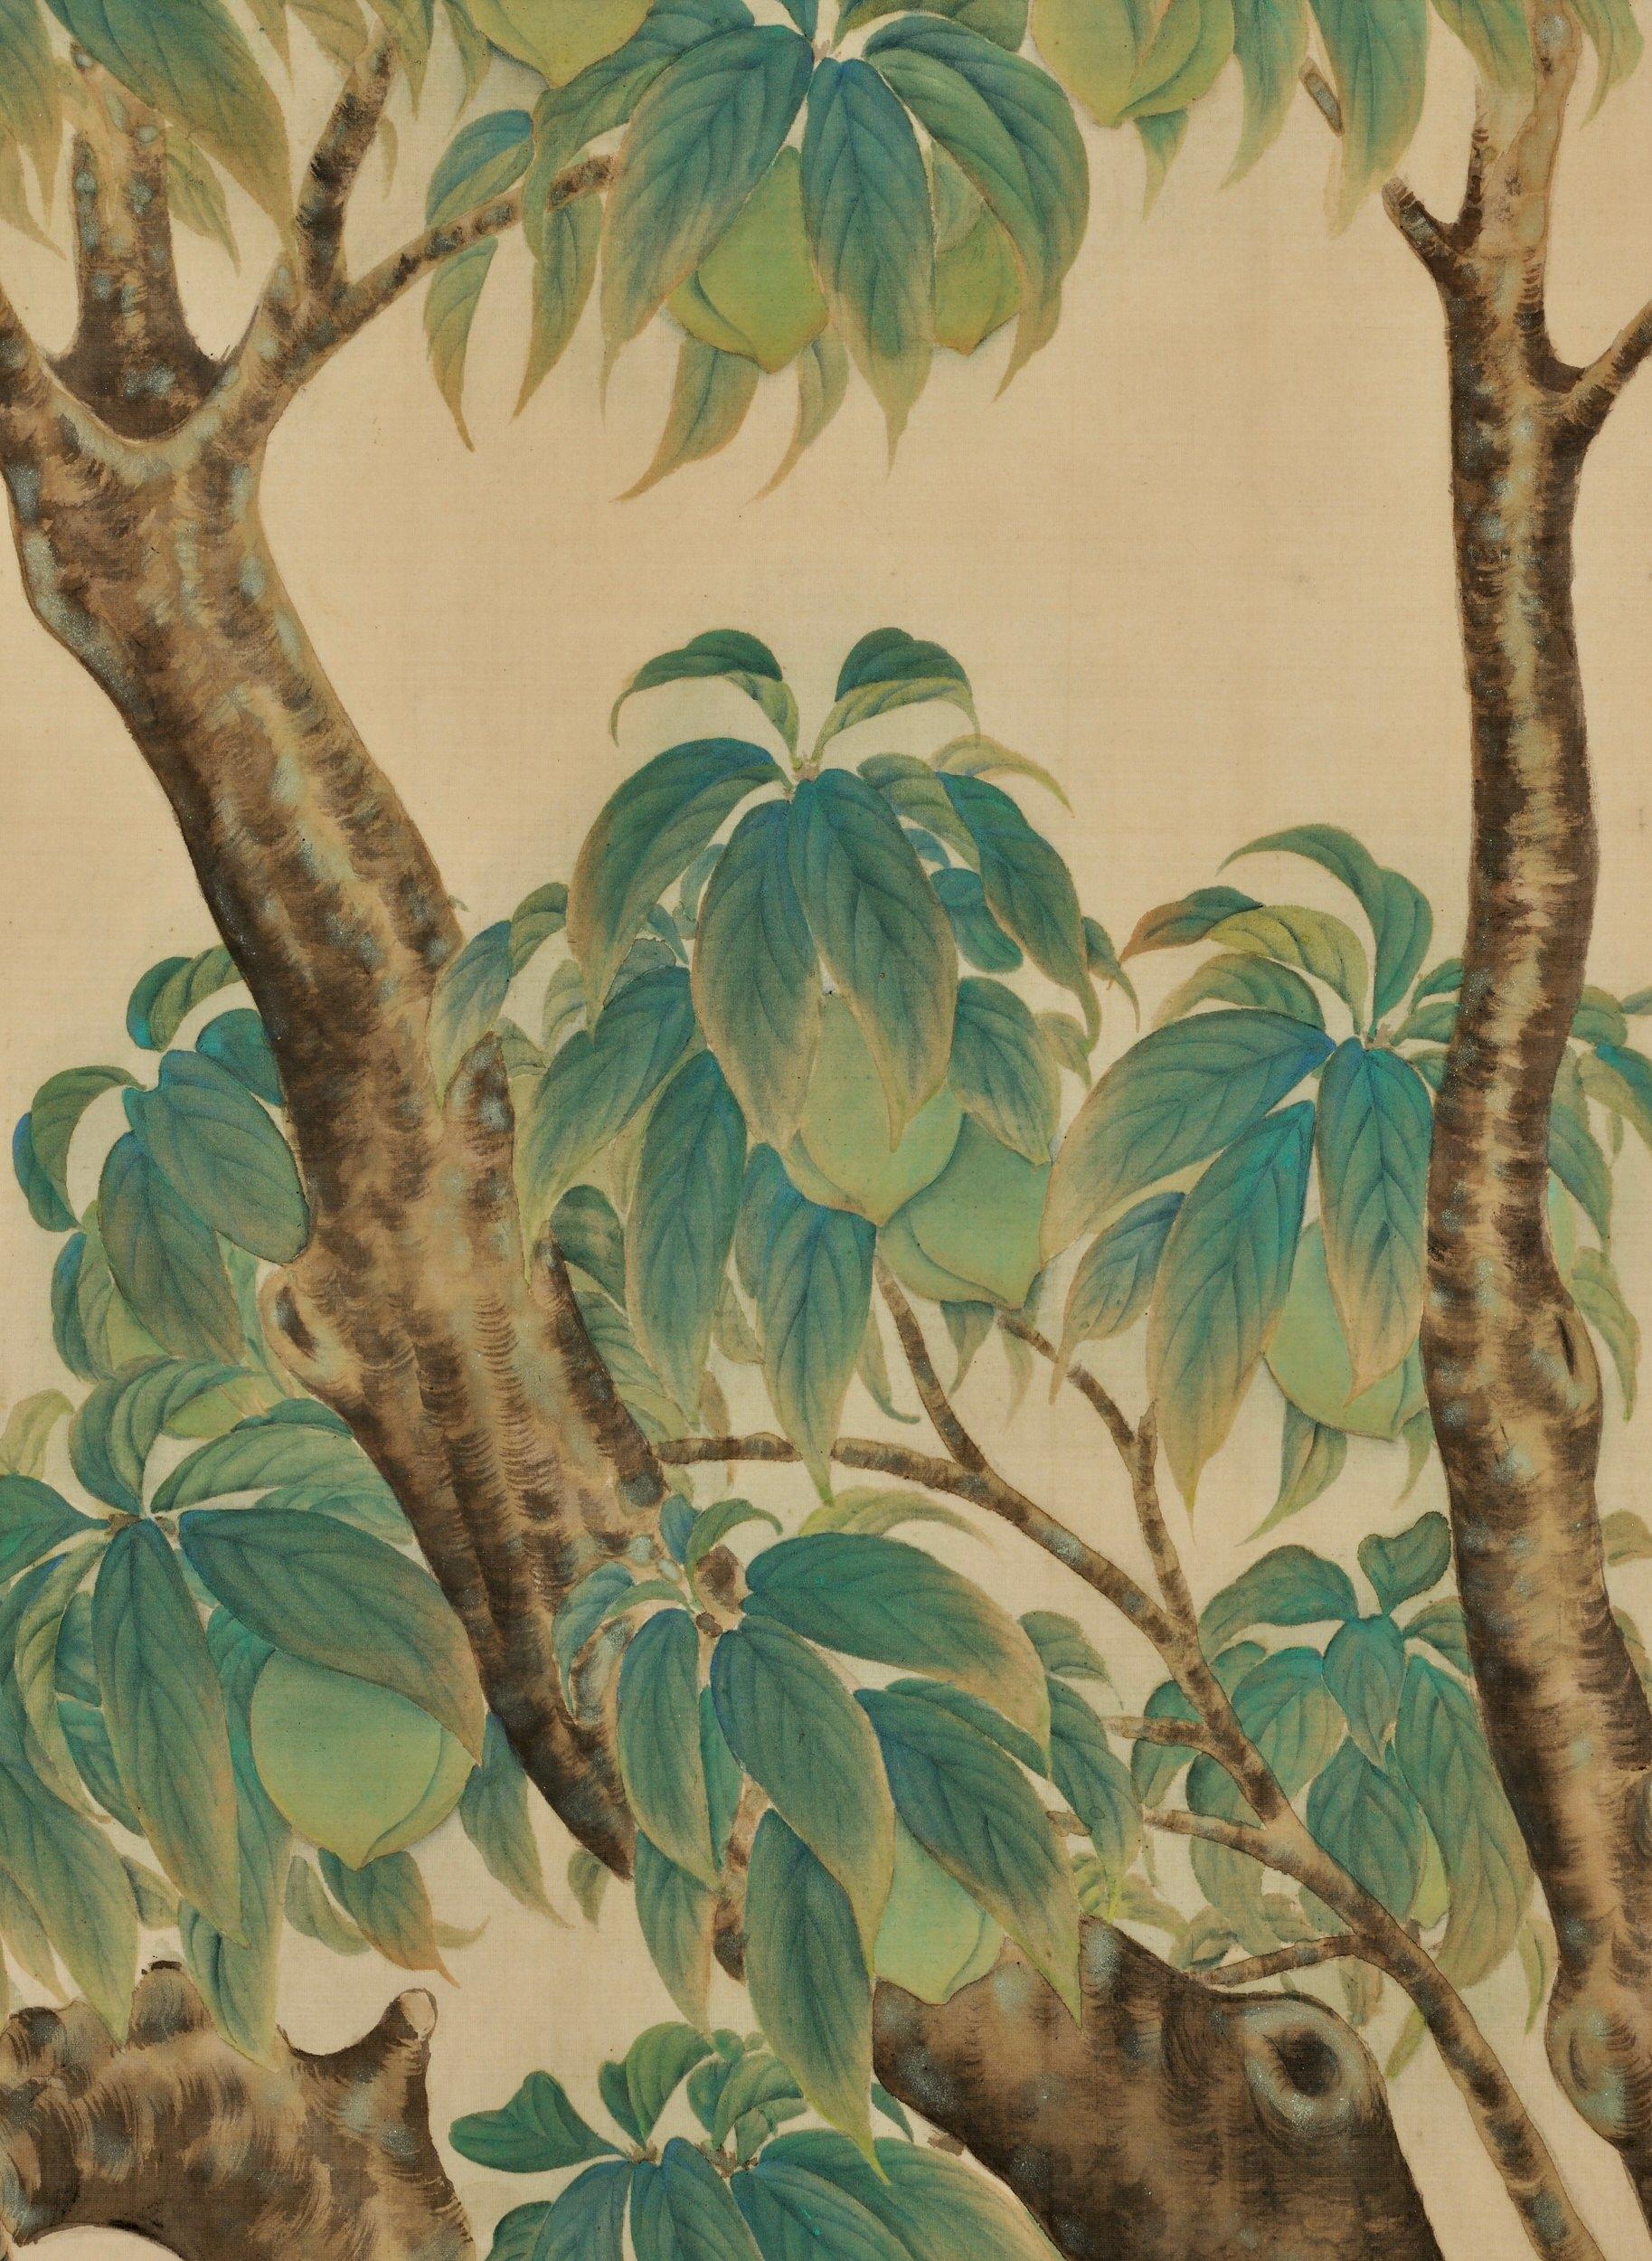 Nakamura Daizaburo

Turteltauben in einem Pfirsichbaum

Taisho-Periode, um 1920

Gerahmtes Gemälde. Mineralische Pigmente, Tinte und Gofun auf Seide

Unterzeichnet: Daizaburo

Abmessungen (gerahmt):

W. 95,5 cm x H. 89 cm x T. 2,5